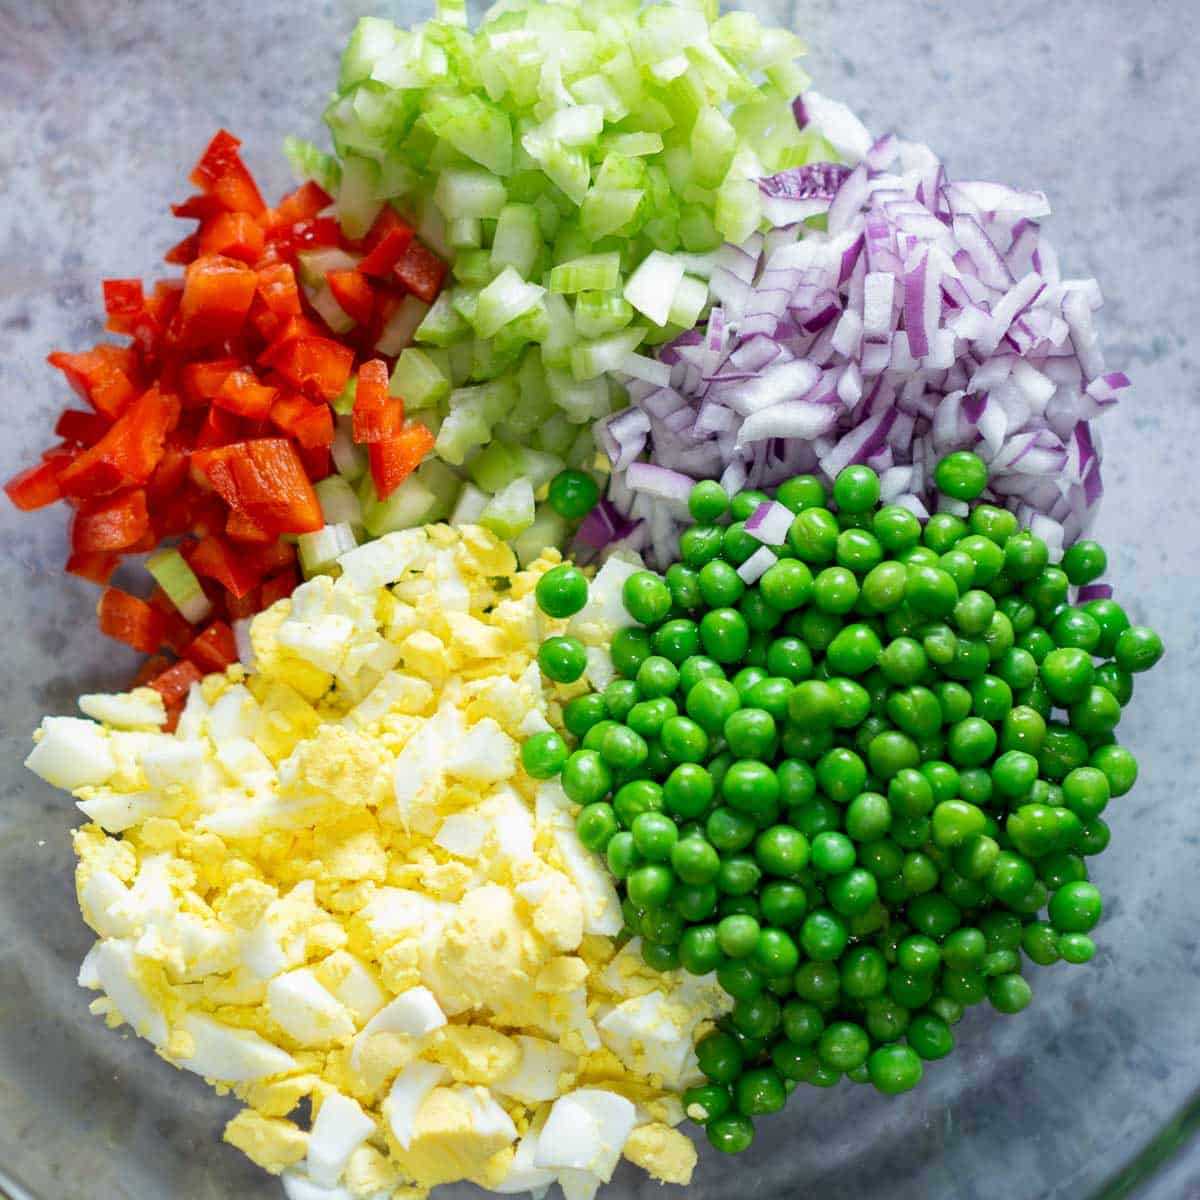 macaroni salad ingredients in glass mixing bowl